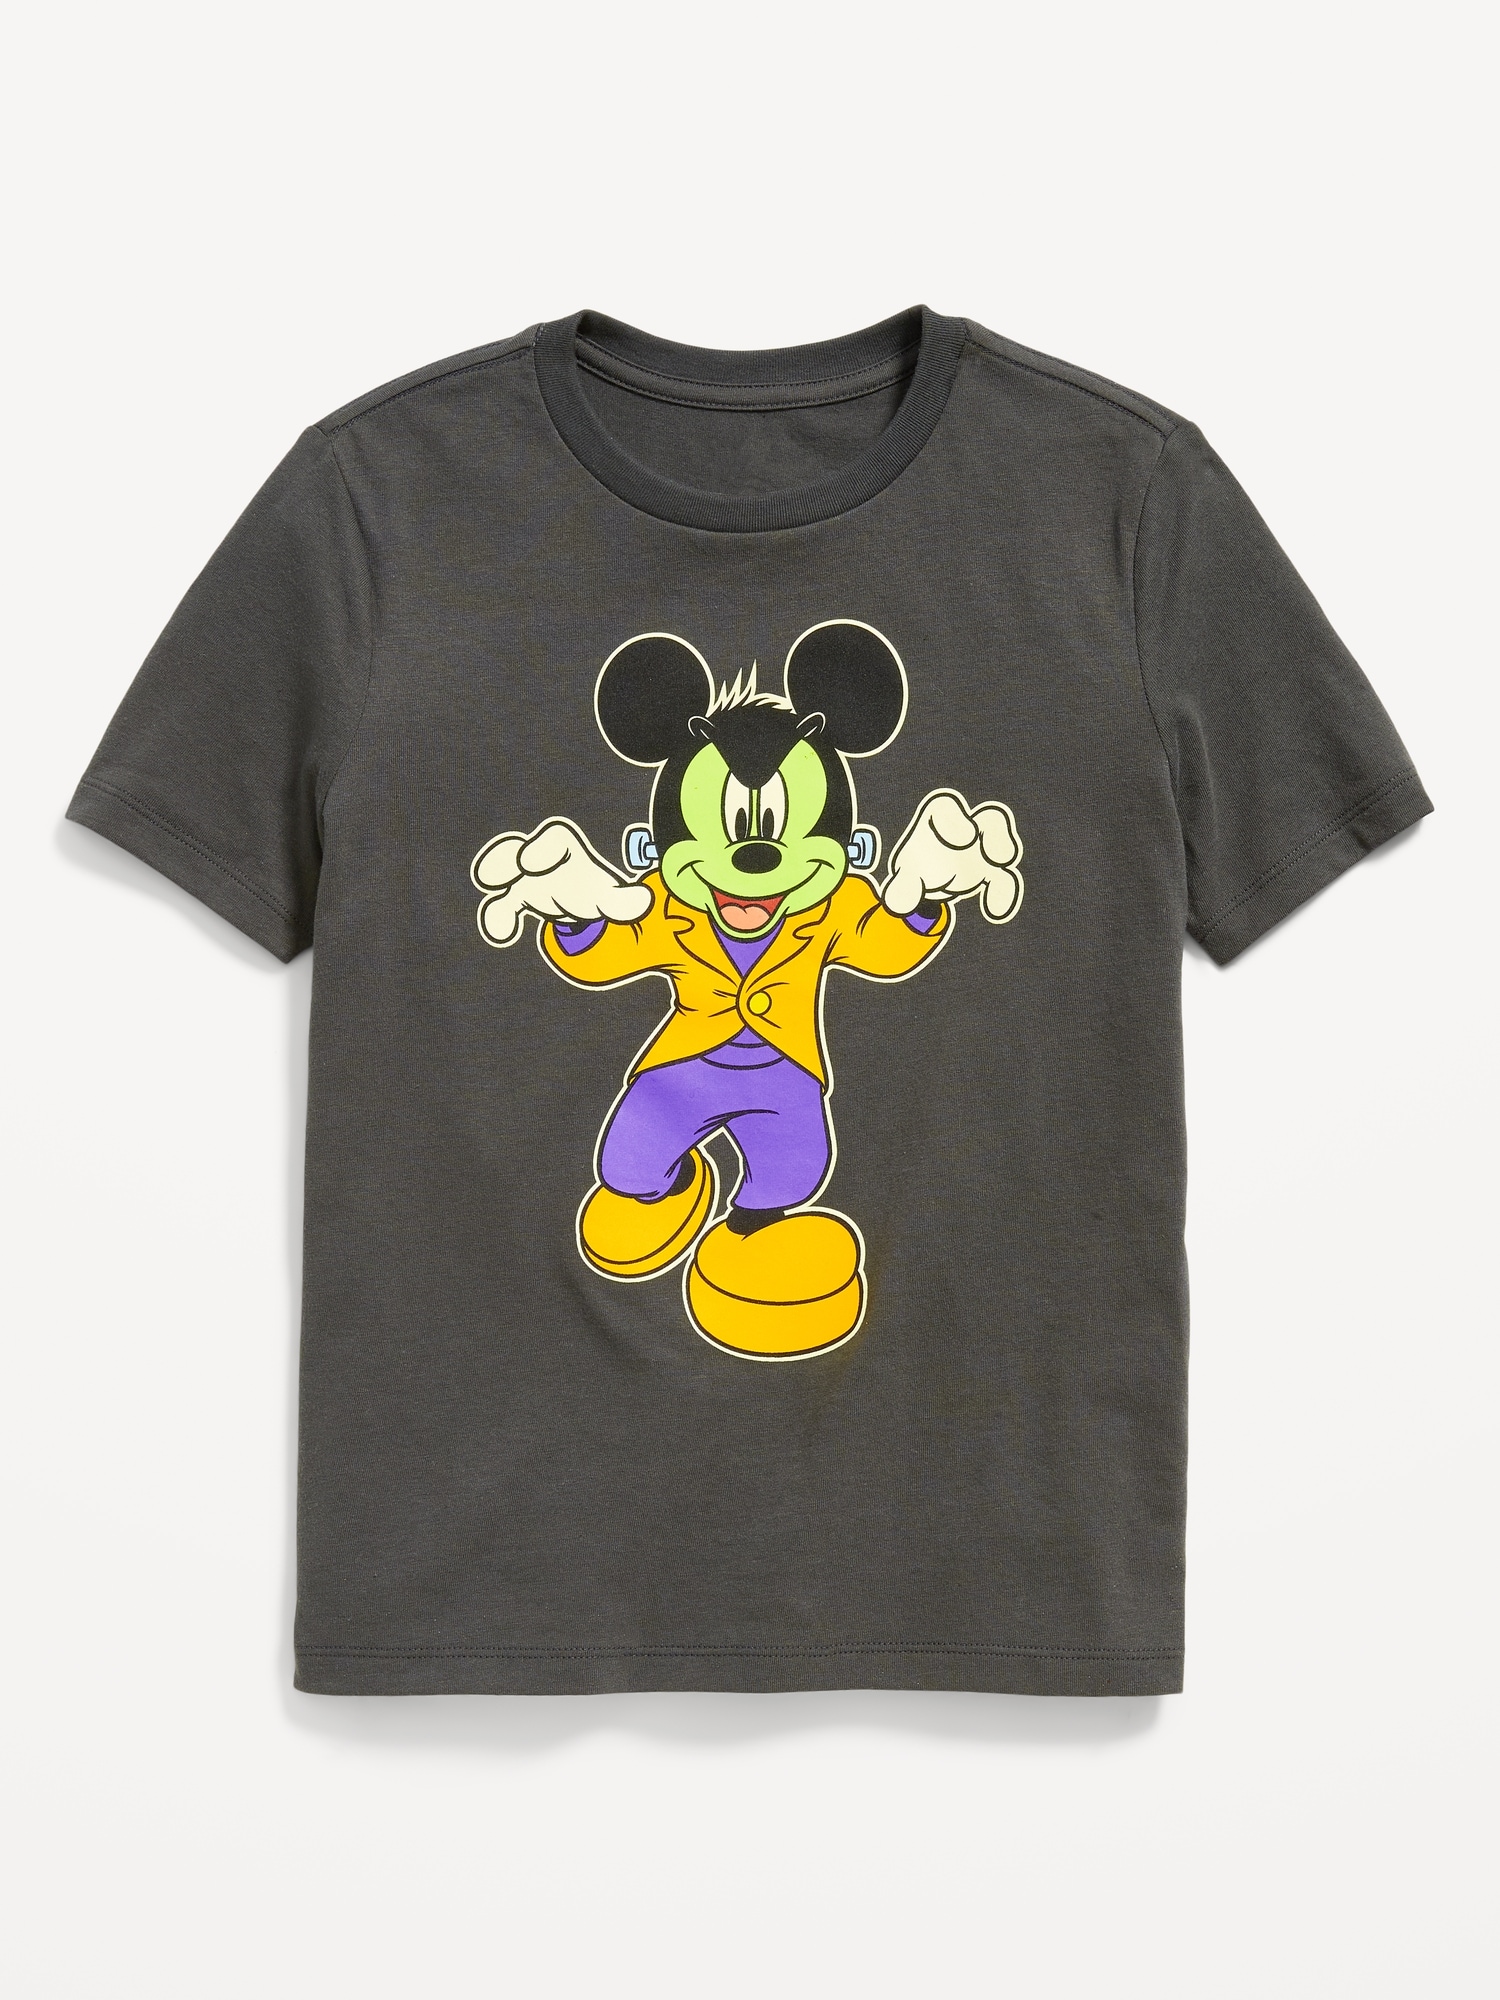 Disney© Matching Halloween Gender-Neutral T-Shirt for Kids